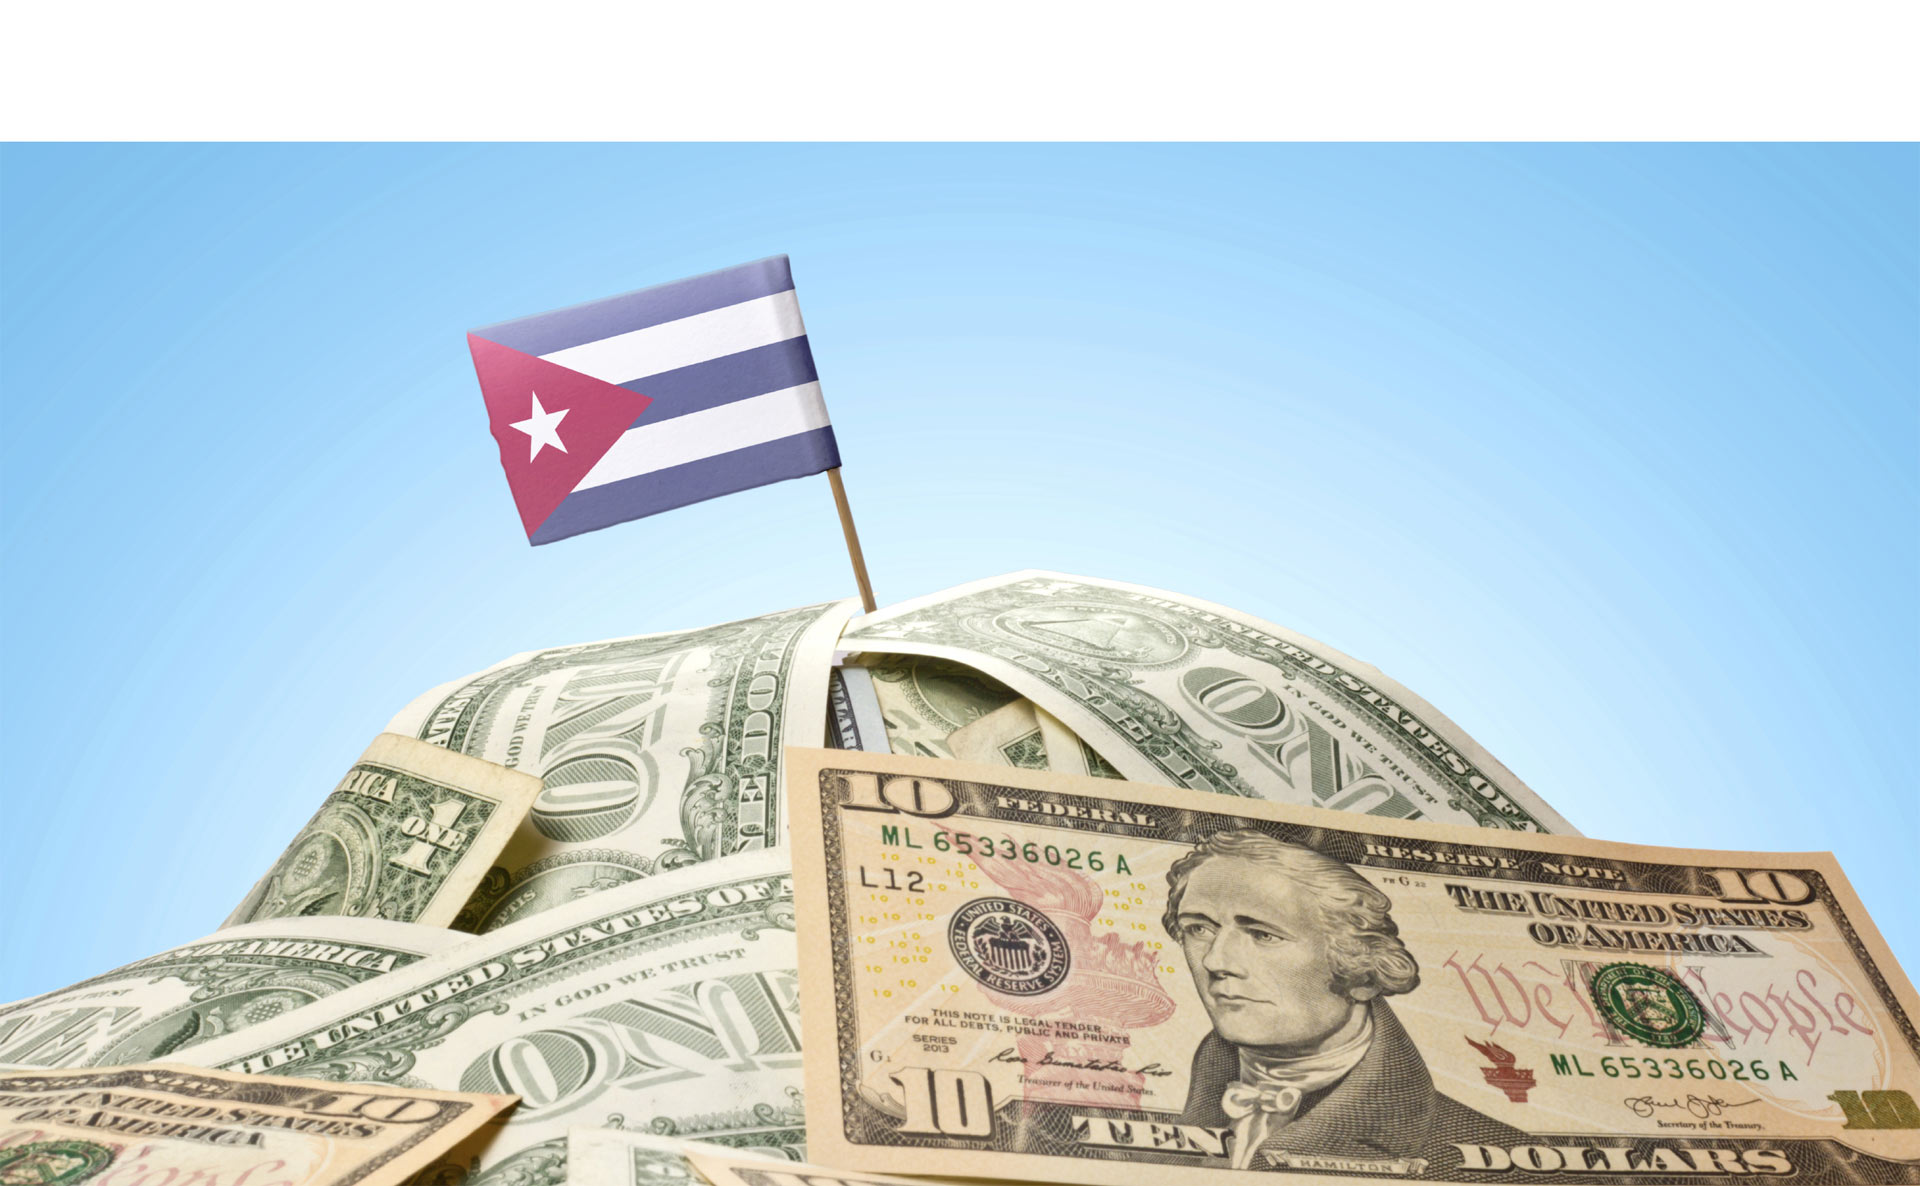 El presidente Raúl Castro estableció la inversión extranjera como tema prioritario para lograr sacar la economía del estancamiento